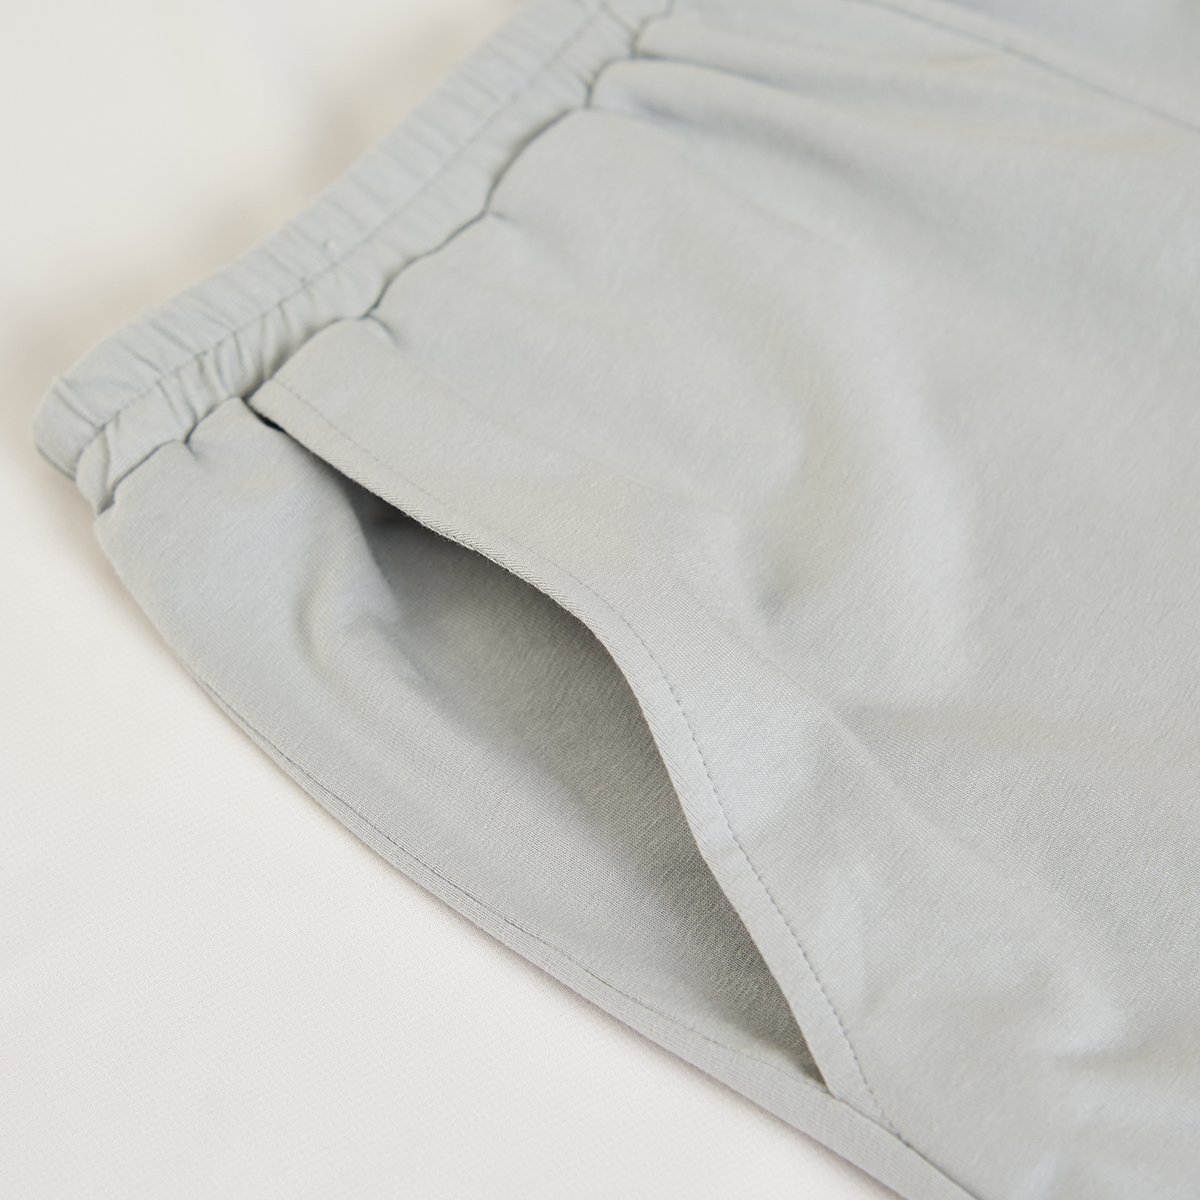 Bộ áo thun cotton mặc nhà bé trai ba lỗ hình in iBasic HOMB006T và quần HOMB006B